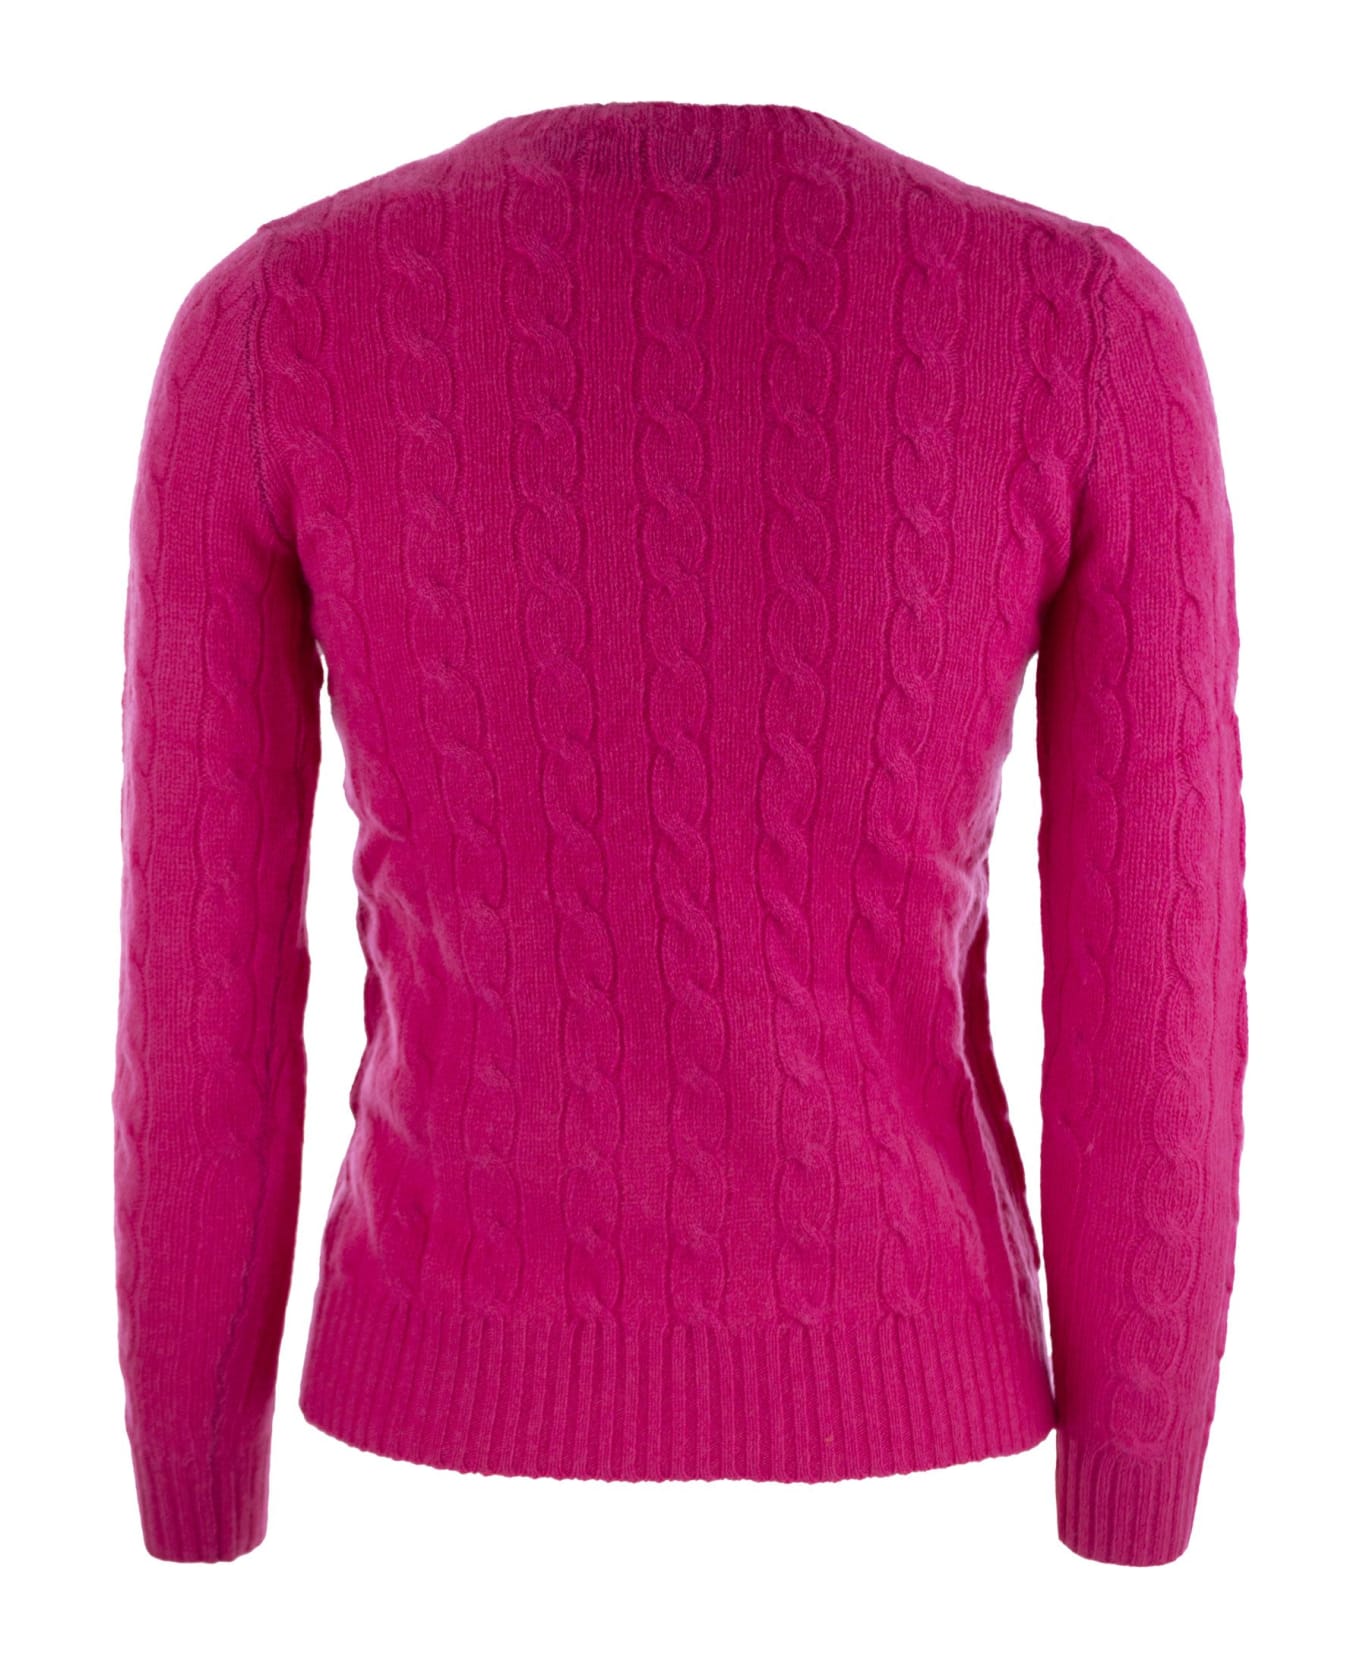 Polo Ralph Lauren Wool Blend Sweater - Fuchsia